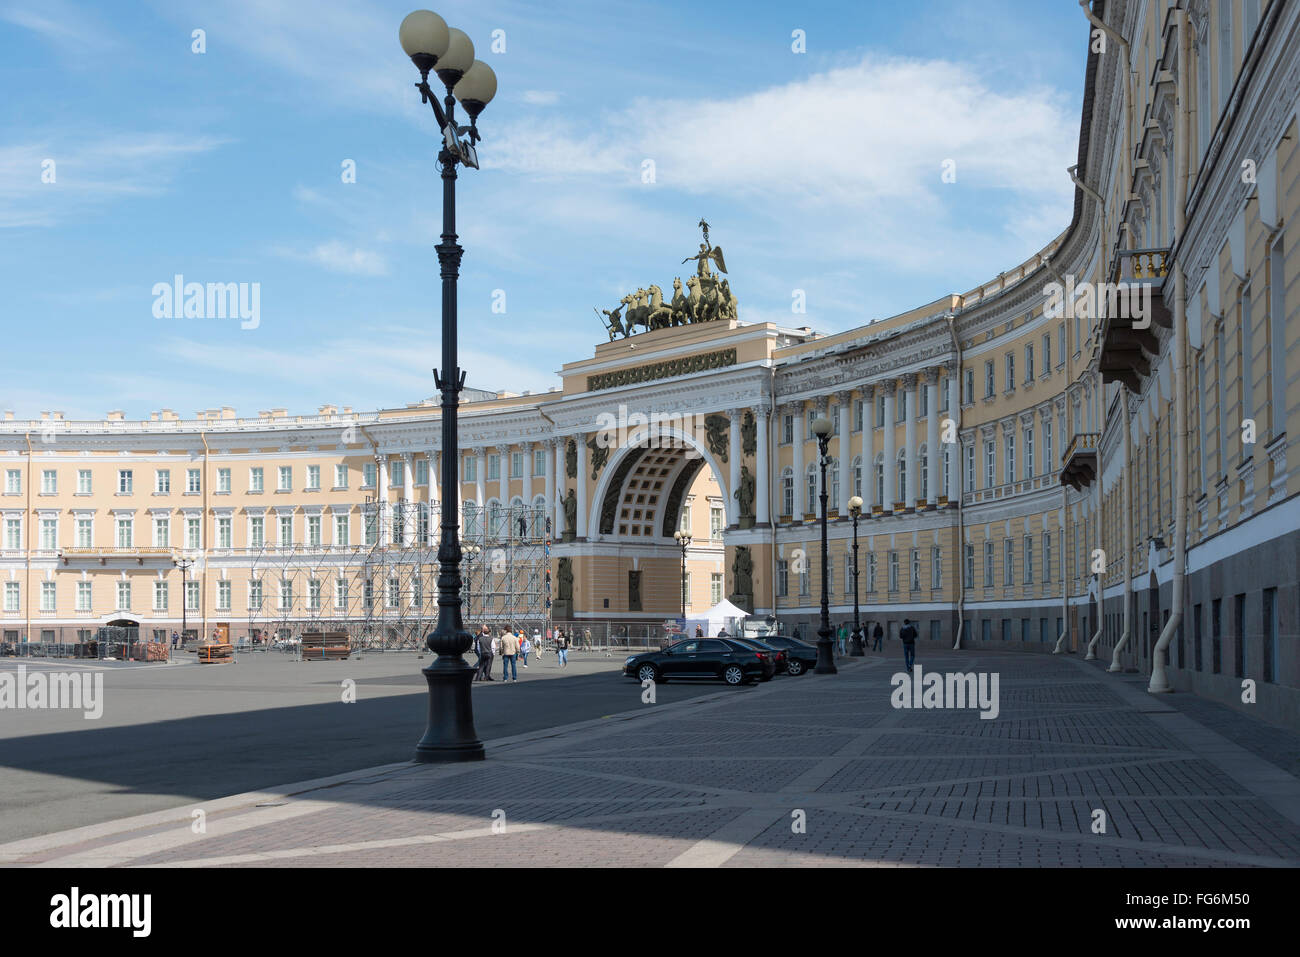 Le personnel de l'immeuble, Place du Palais, Saint Petersburg, Fédération de Russie, Région Nord-Ouest Banque D'Images